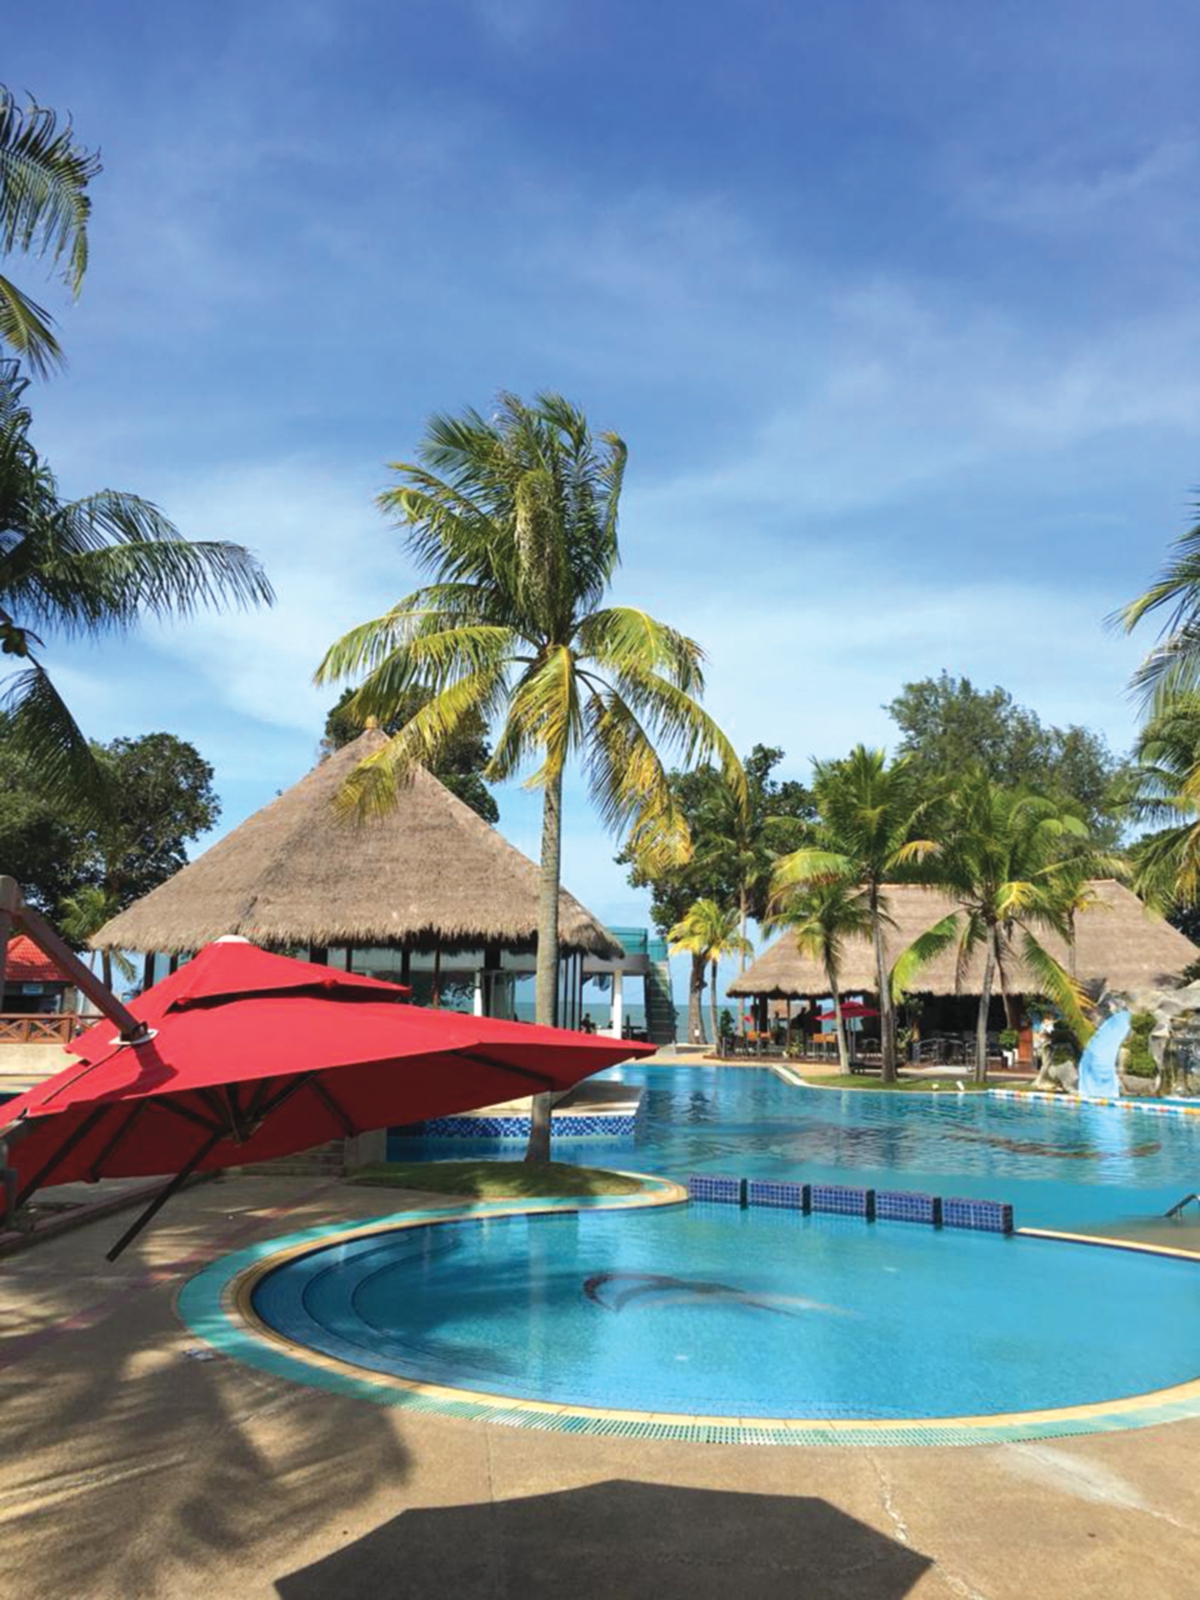 MEWAH antara fasiliti kolam ditawarkan di salah satu resort di Desaru.